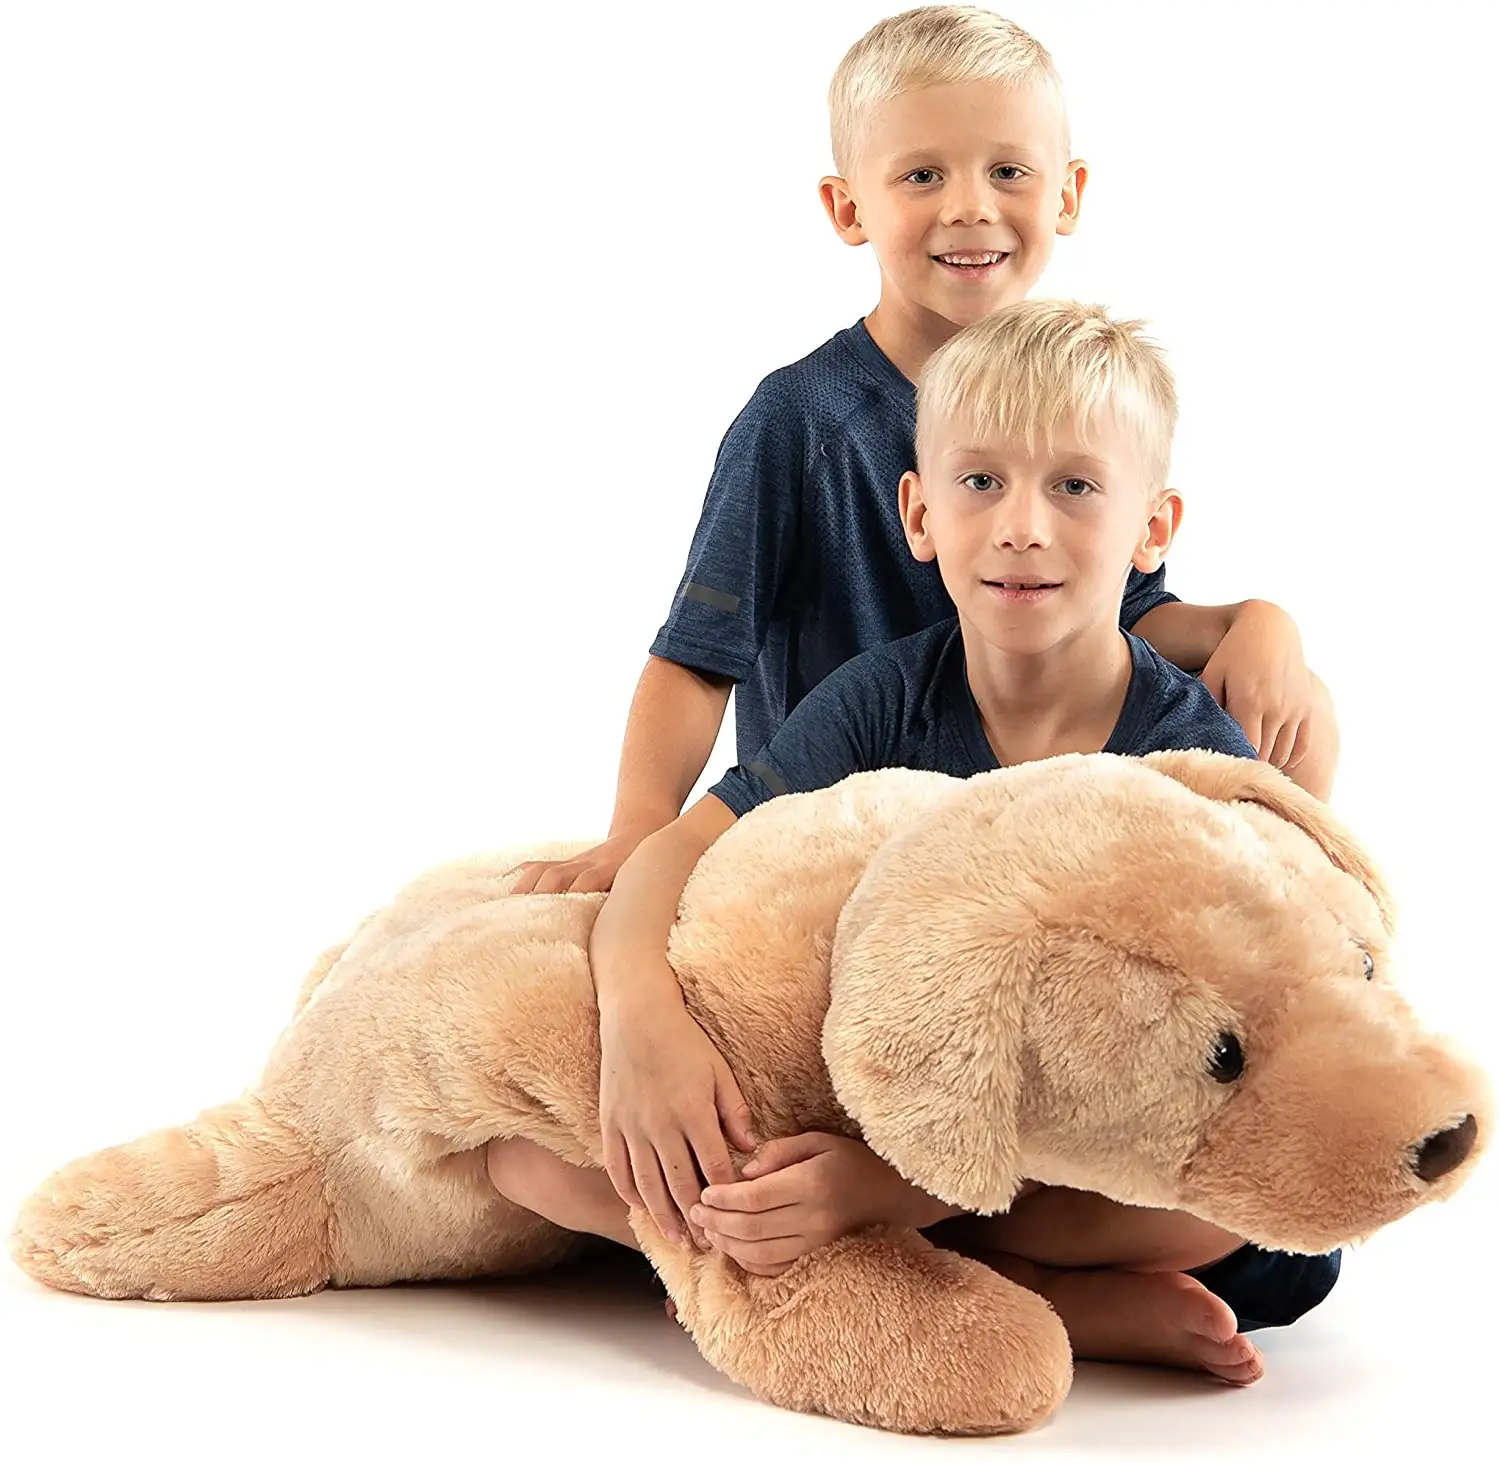 Travesseiro realista de pelúcia, brinquedo enorme de cães de pelúcia com almofada para crianças, adultos